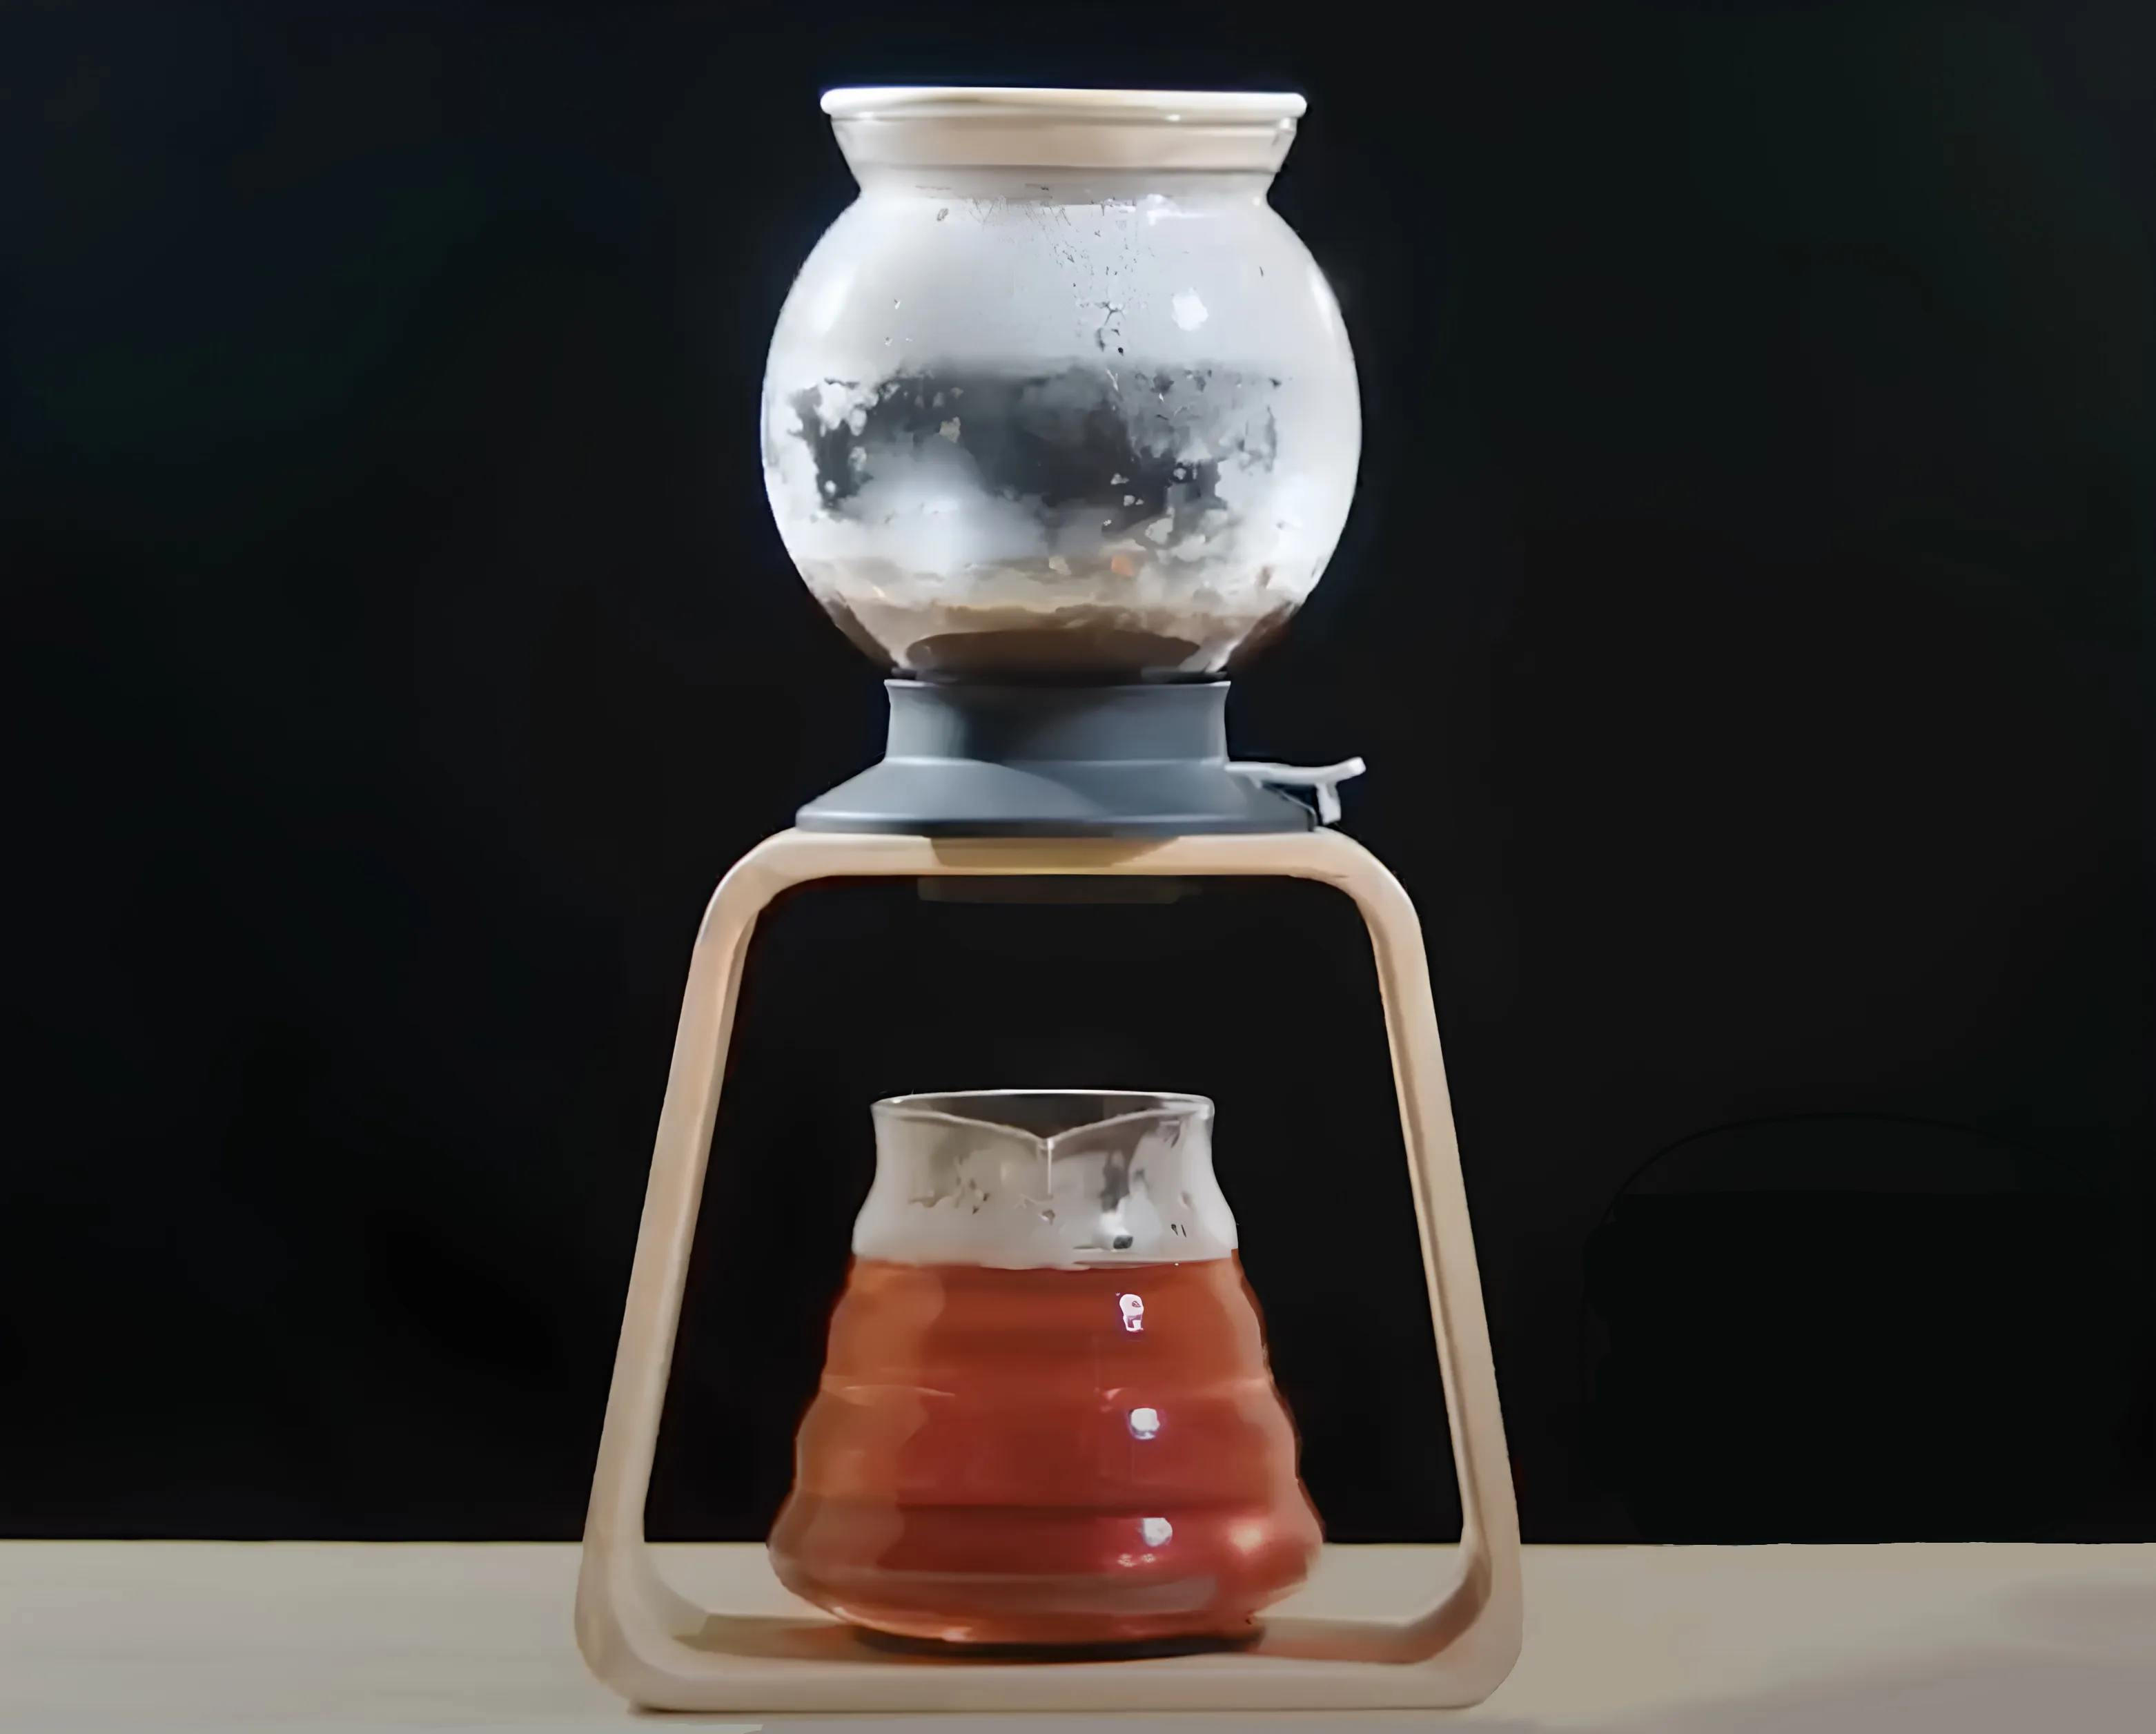 Dunkeld luxury leaf tea brewer in use